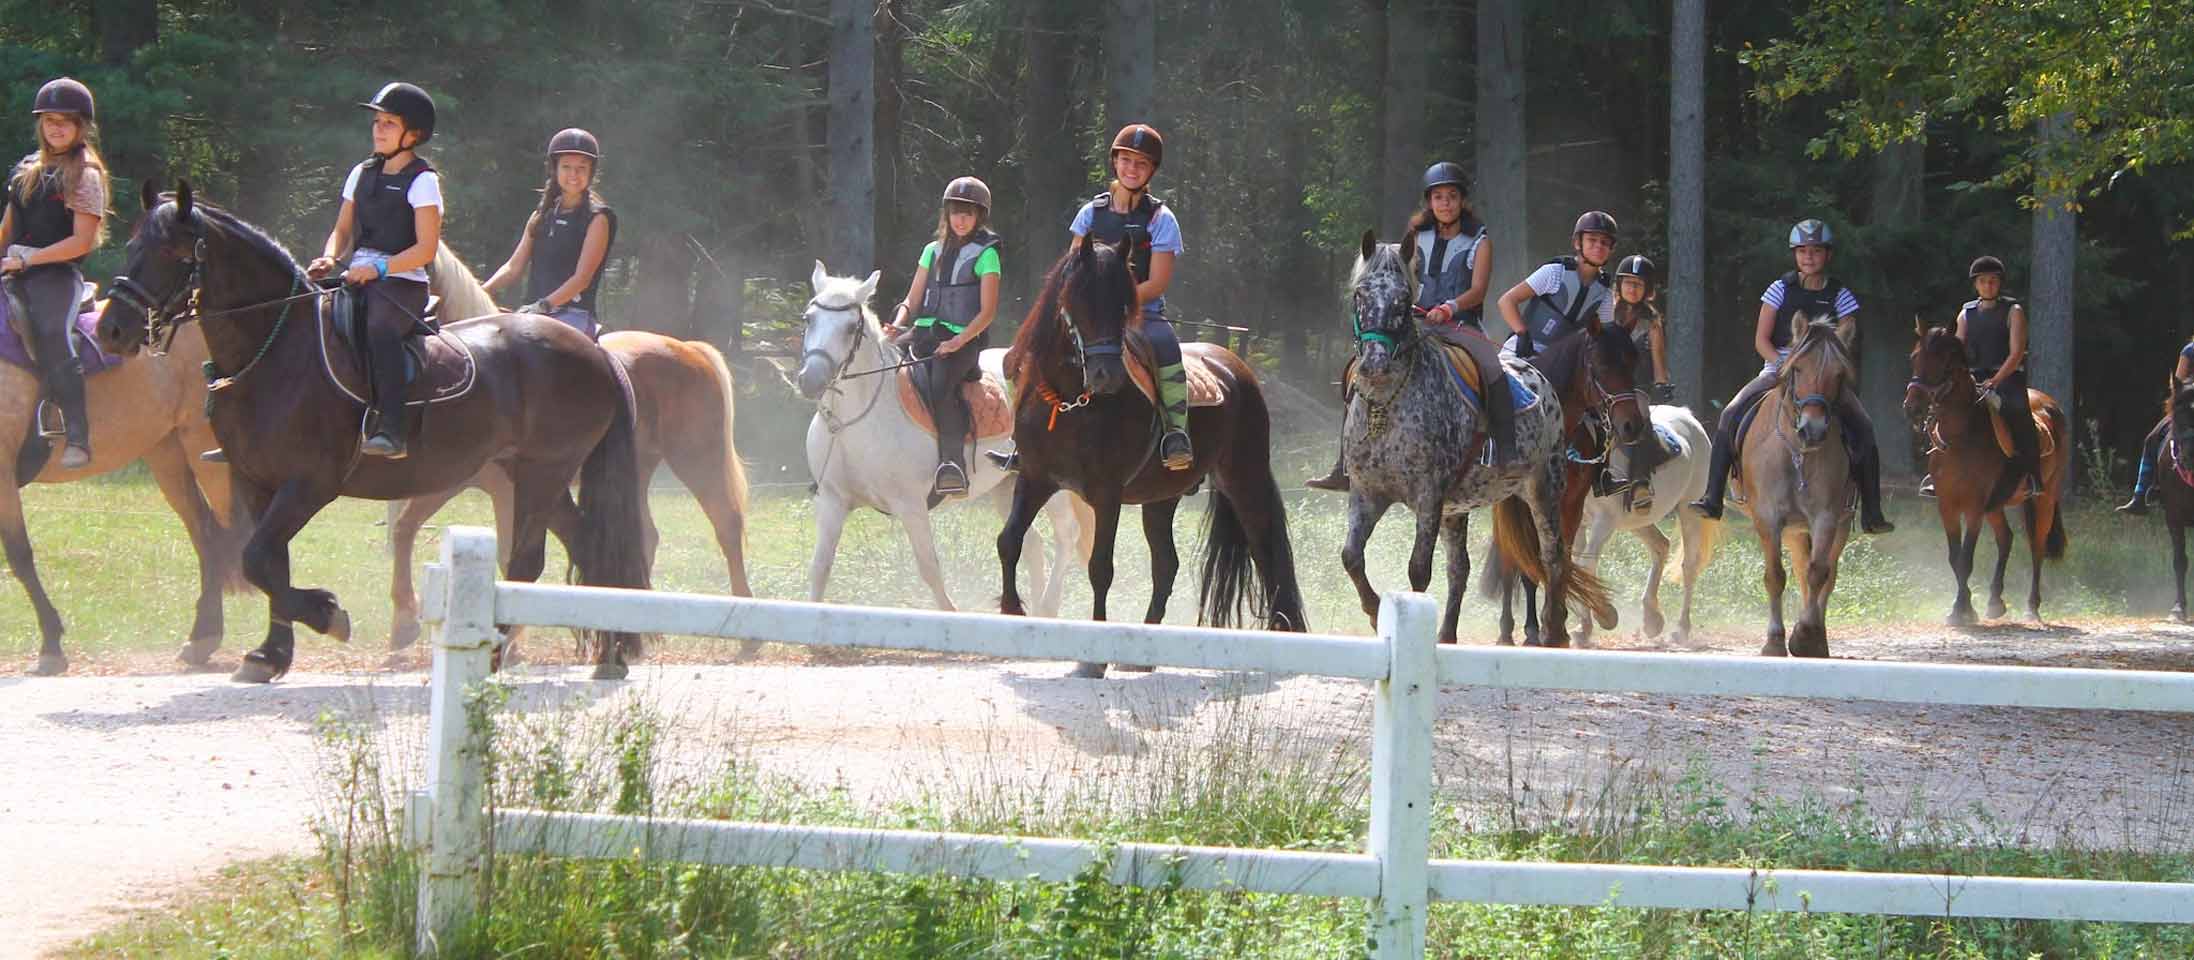 Adolescents sur une colo spéciale équitation avec une randonnée dans la campagne pour découvrir des lieux uniques lors de leur vacances en France durant l'été